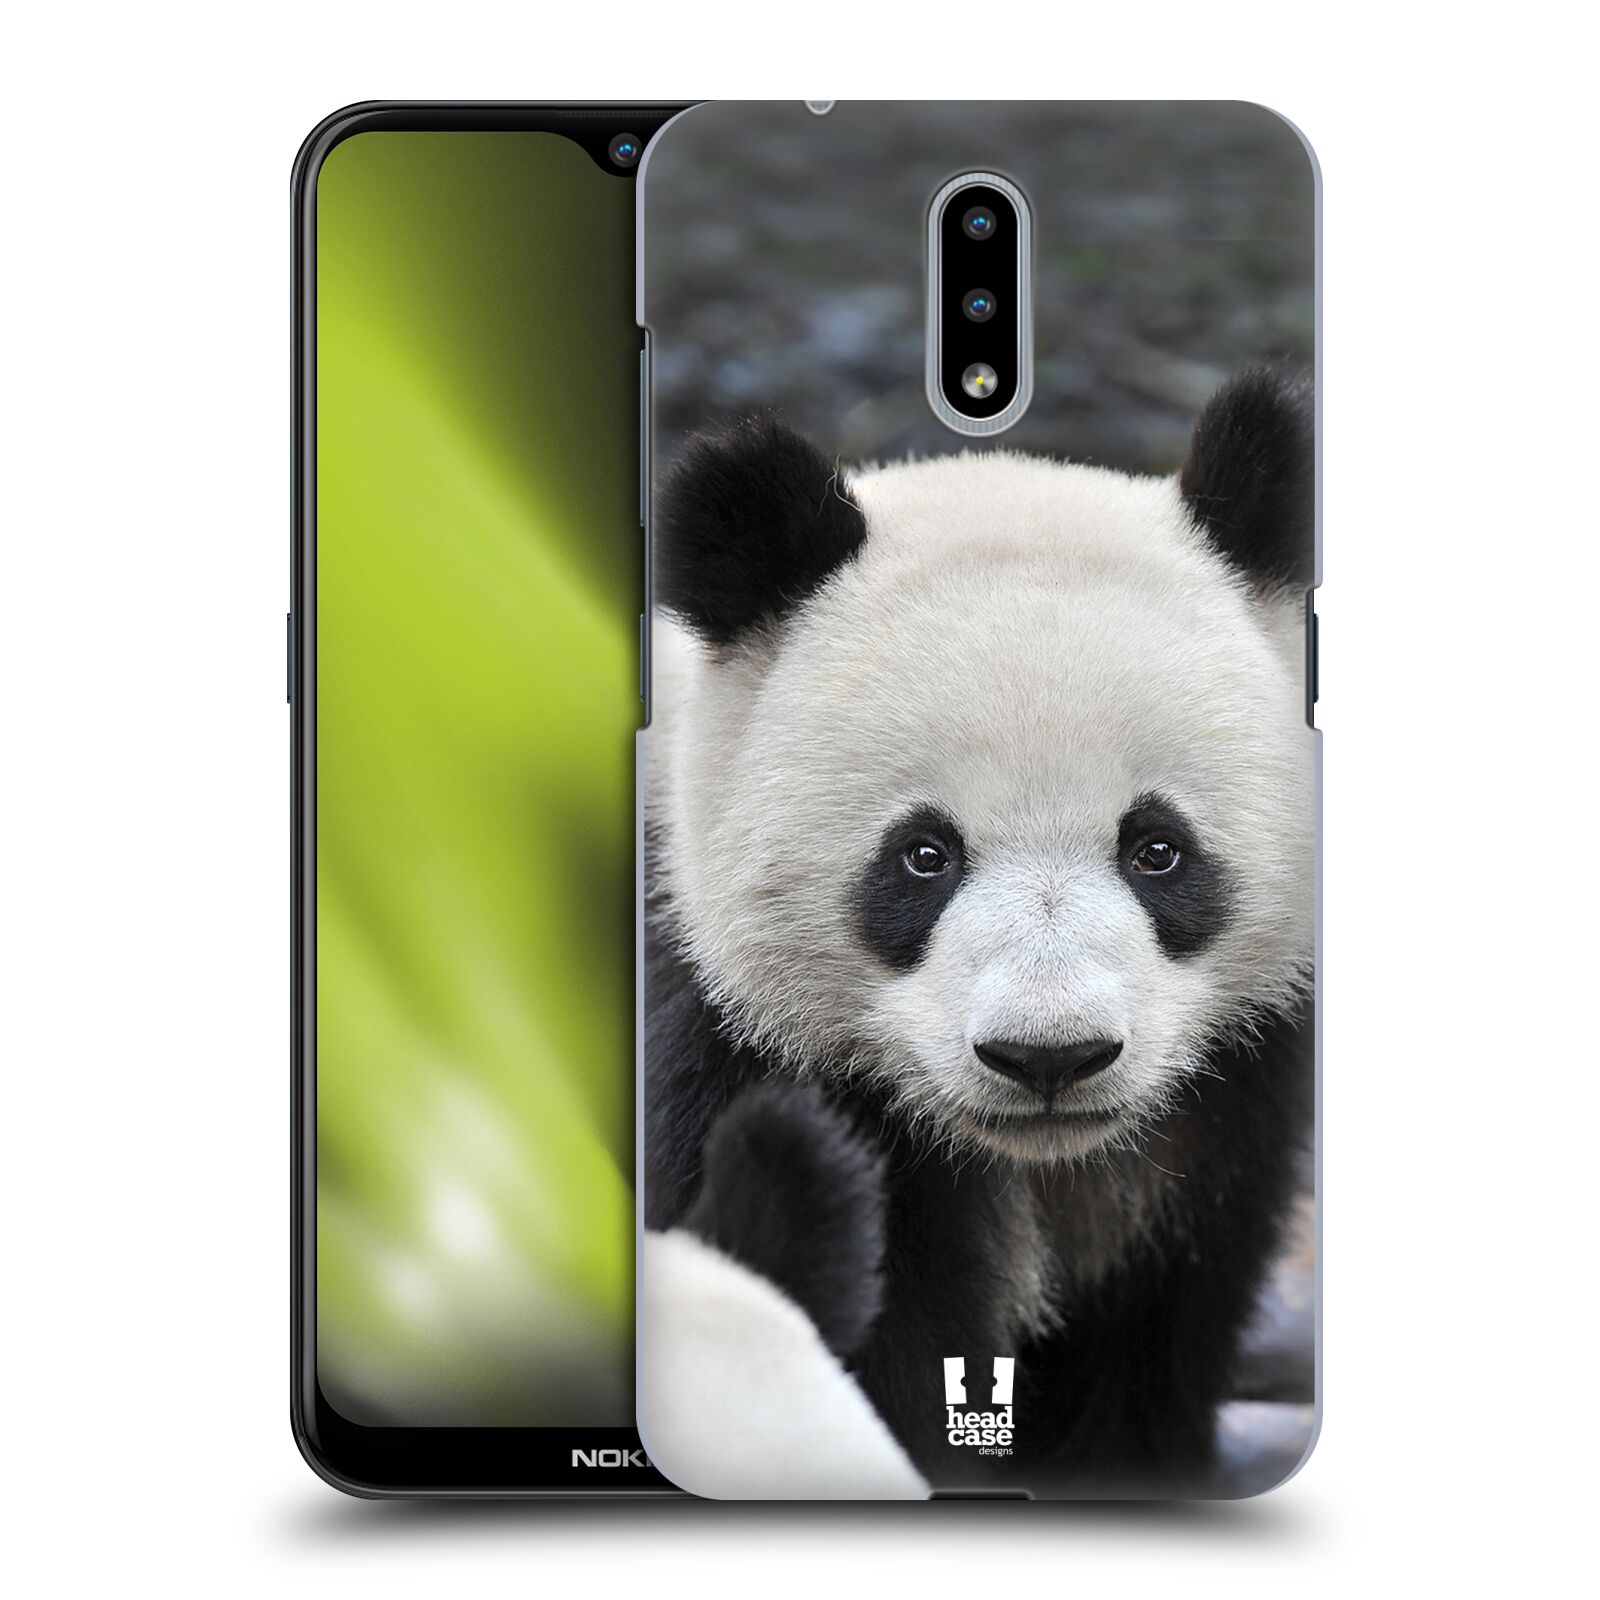 Zadní obal pro mobil Nokia 2.3 - HEAD CASE - Svět zvířat medvěd panda